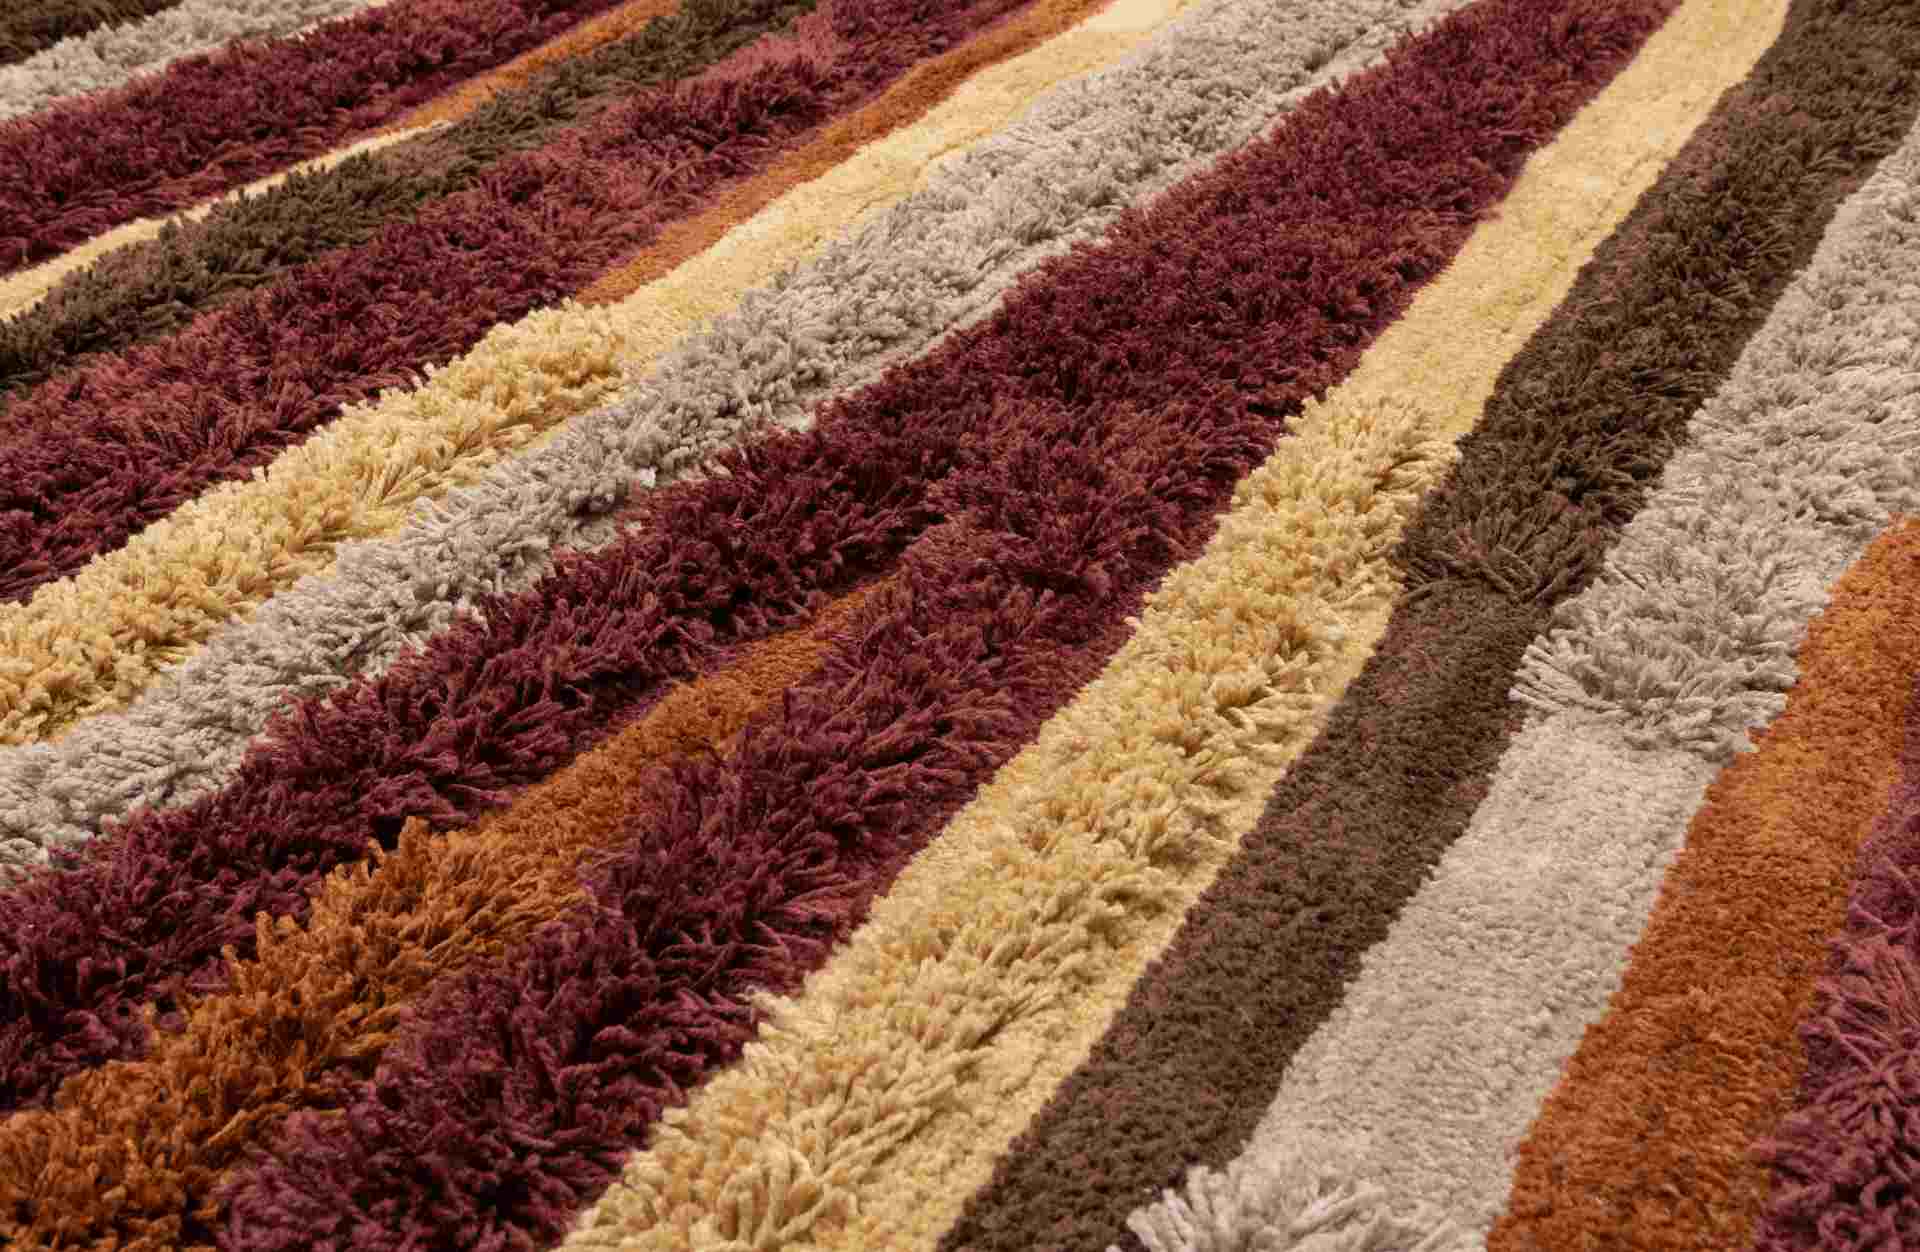 Der Teppich Landscape überzeugt mit seinem modernen Design. Gefertigt wurde er aus Kunststofffasern, welche einen roten Farbton besitzt. Der Teppich besitzt eine Größe von 170x240 cm.